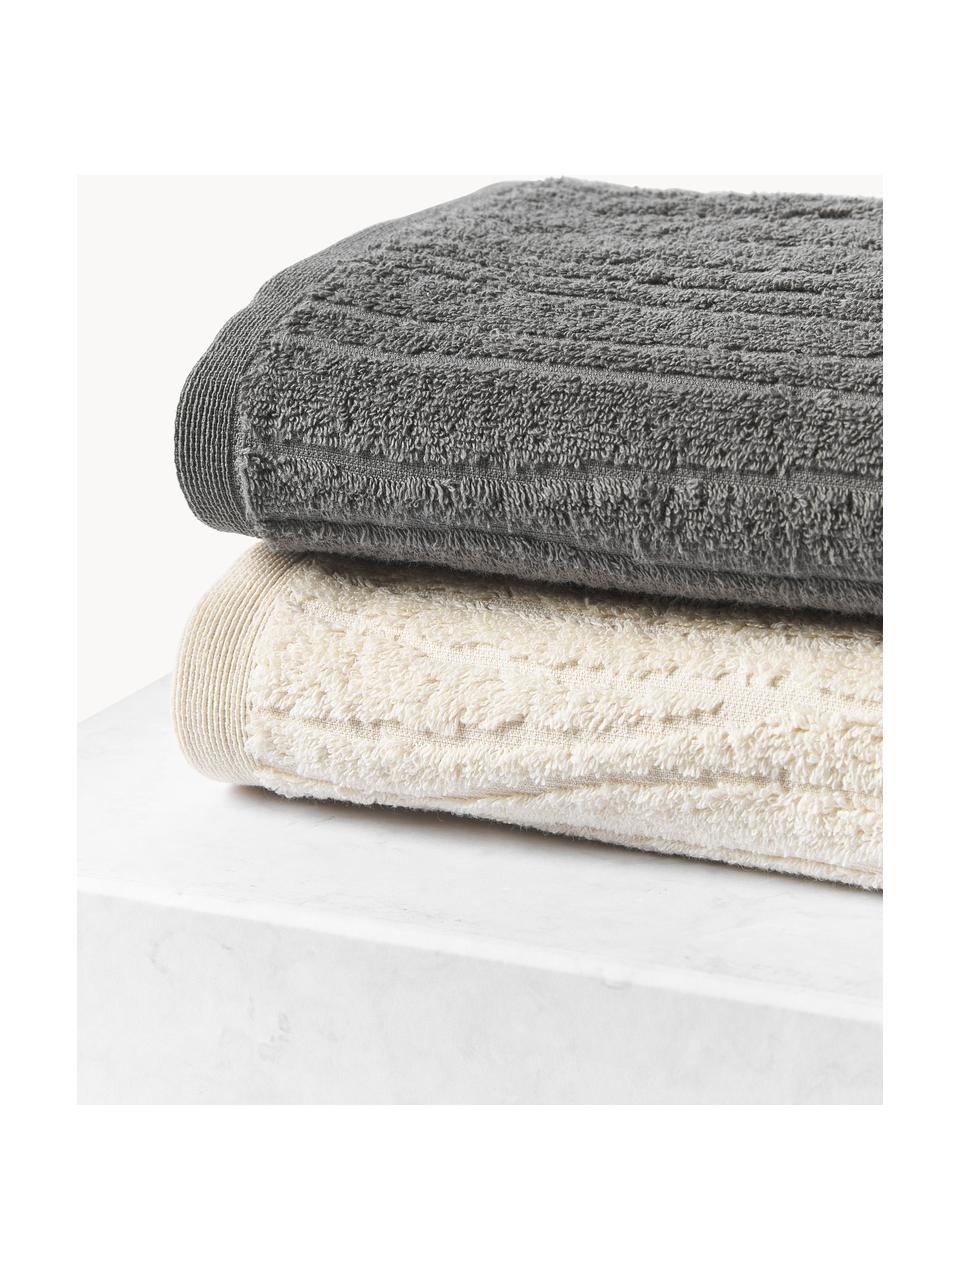 Komplet ręczników z bawełny Audrina, różne rozmiary, Ciemny szary, 3 elem. (ręcznik dla gości, ręcznik do rąk, ręcznik kąpielowy)